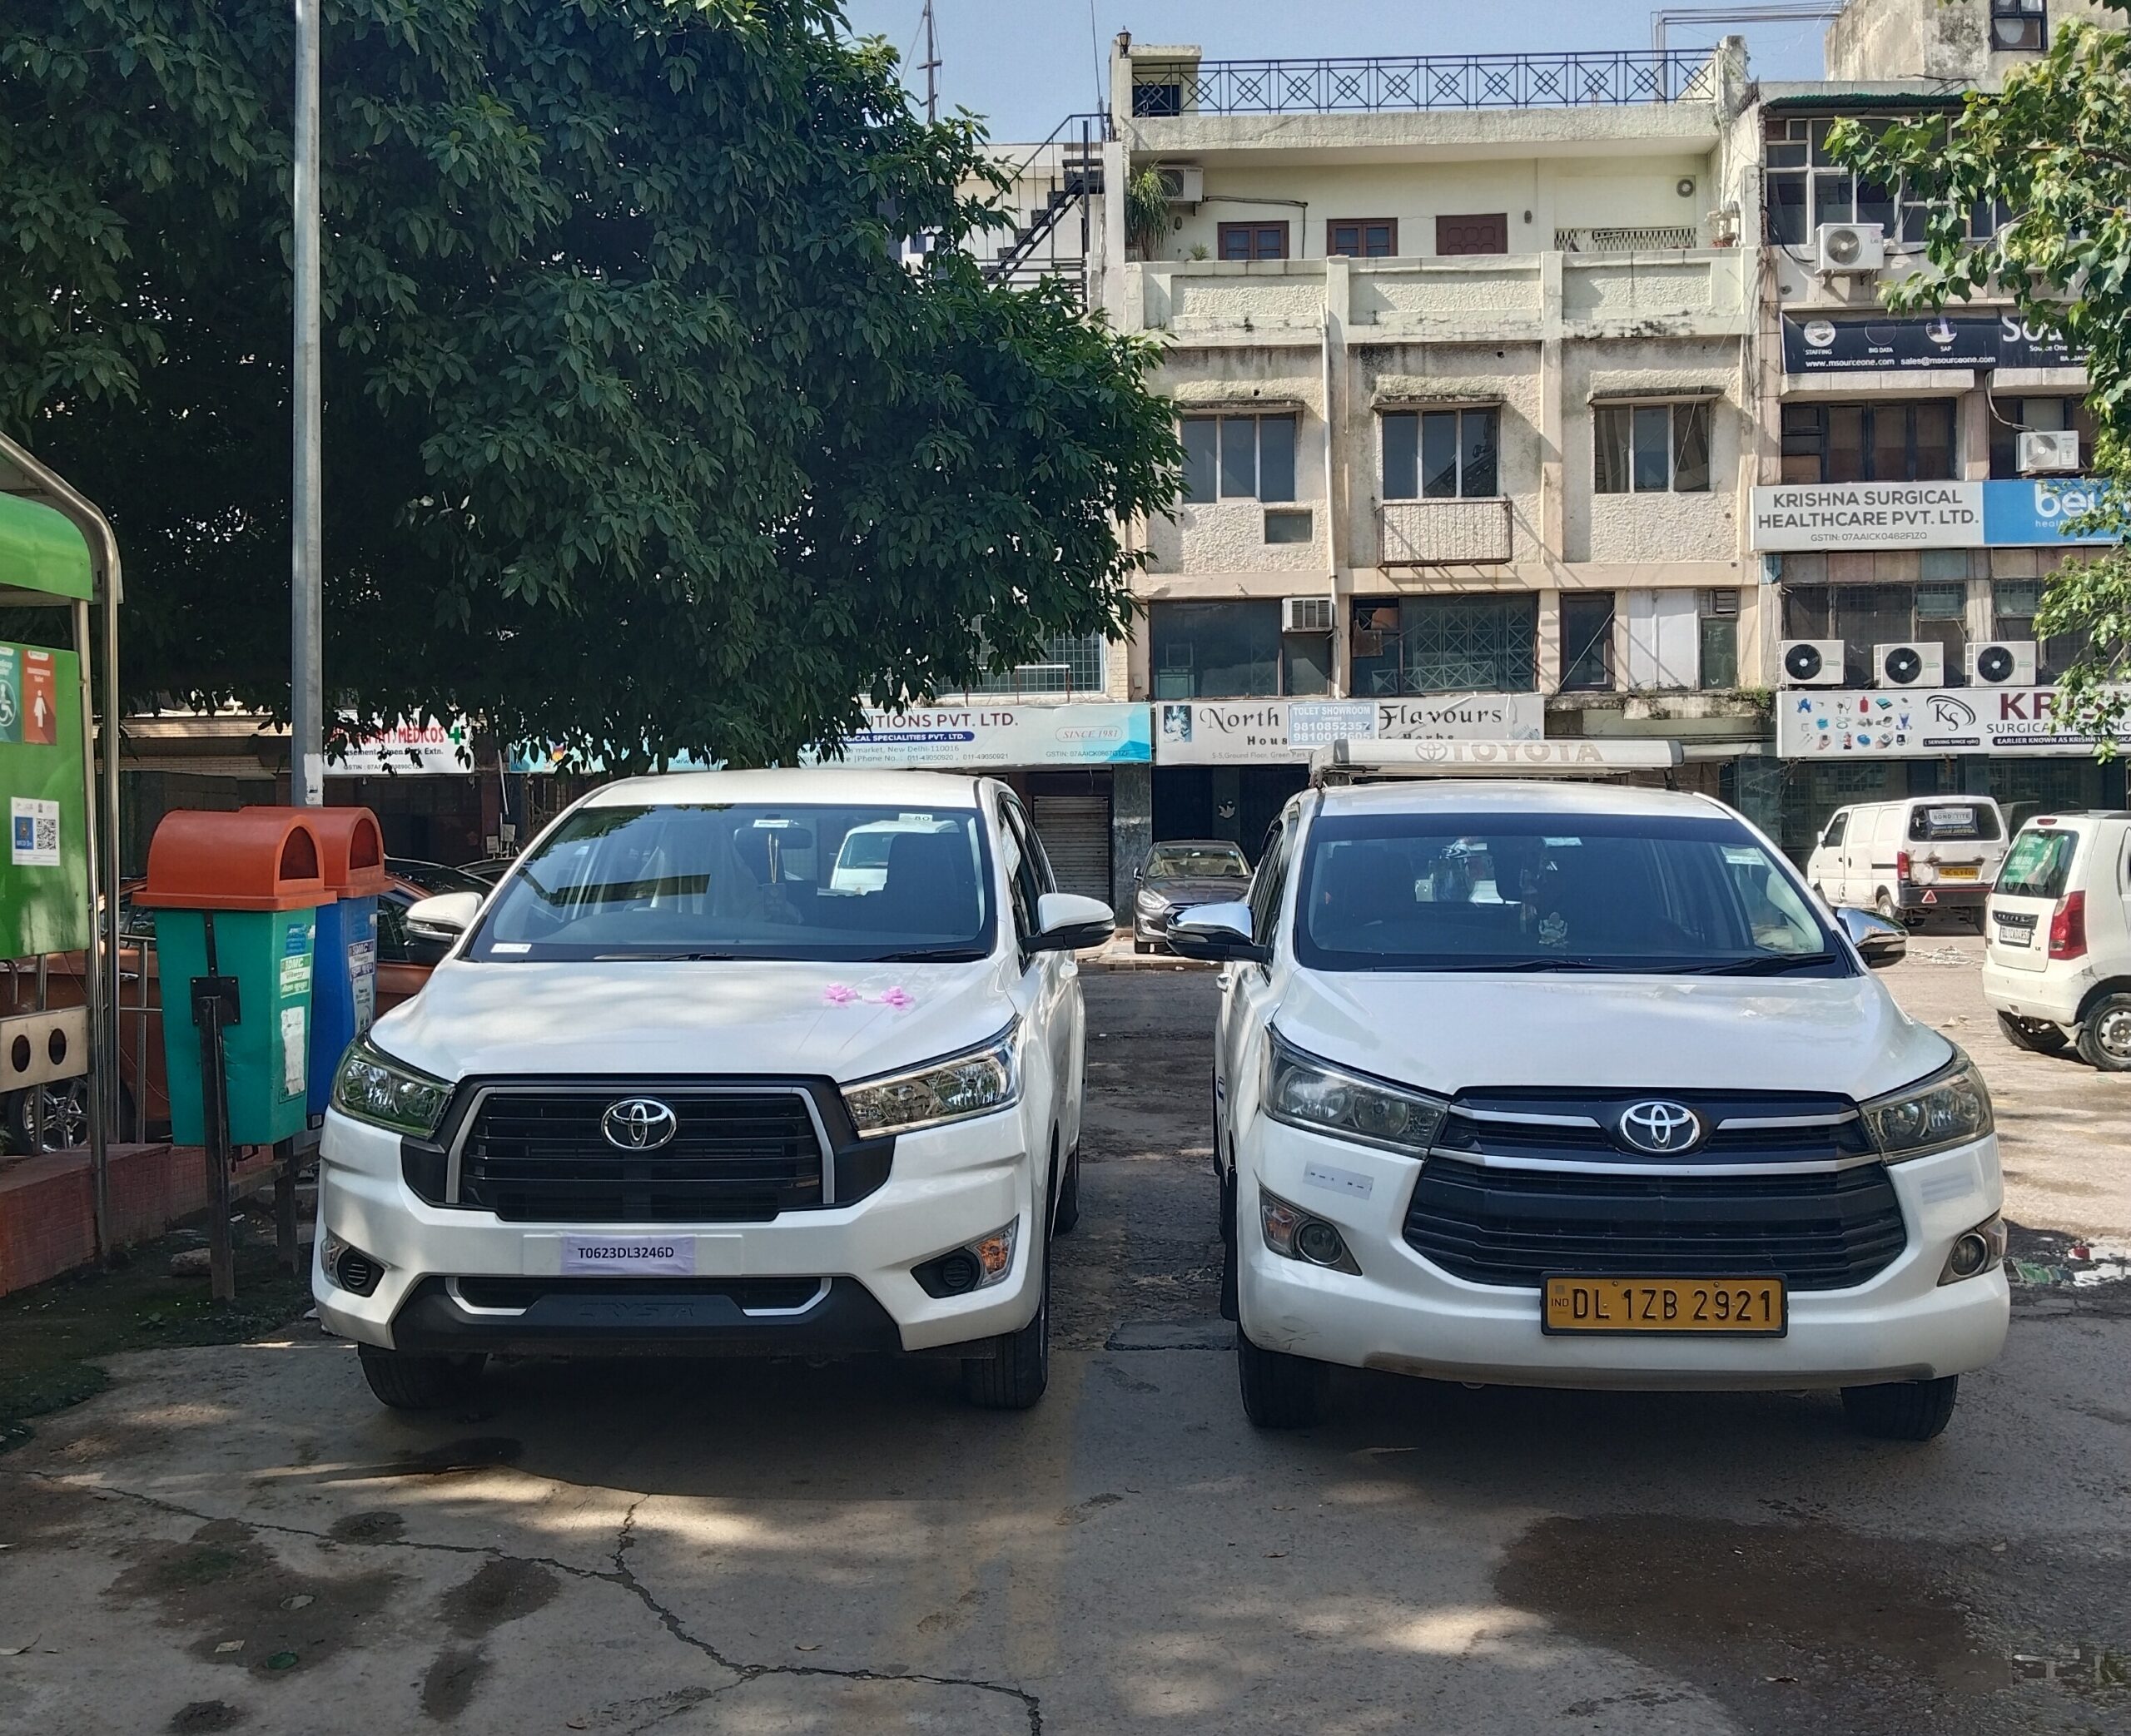 Innova Crysta Taxi Delhi for Outstation JKS Travels